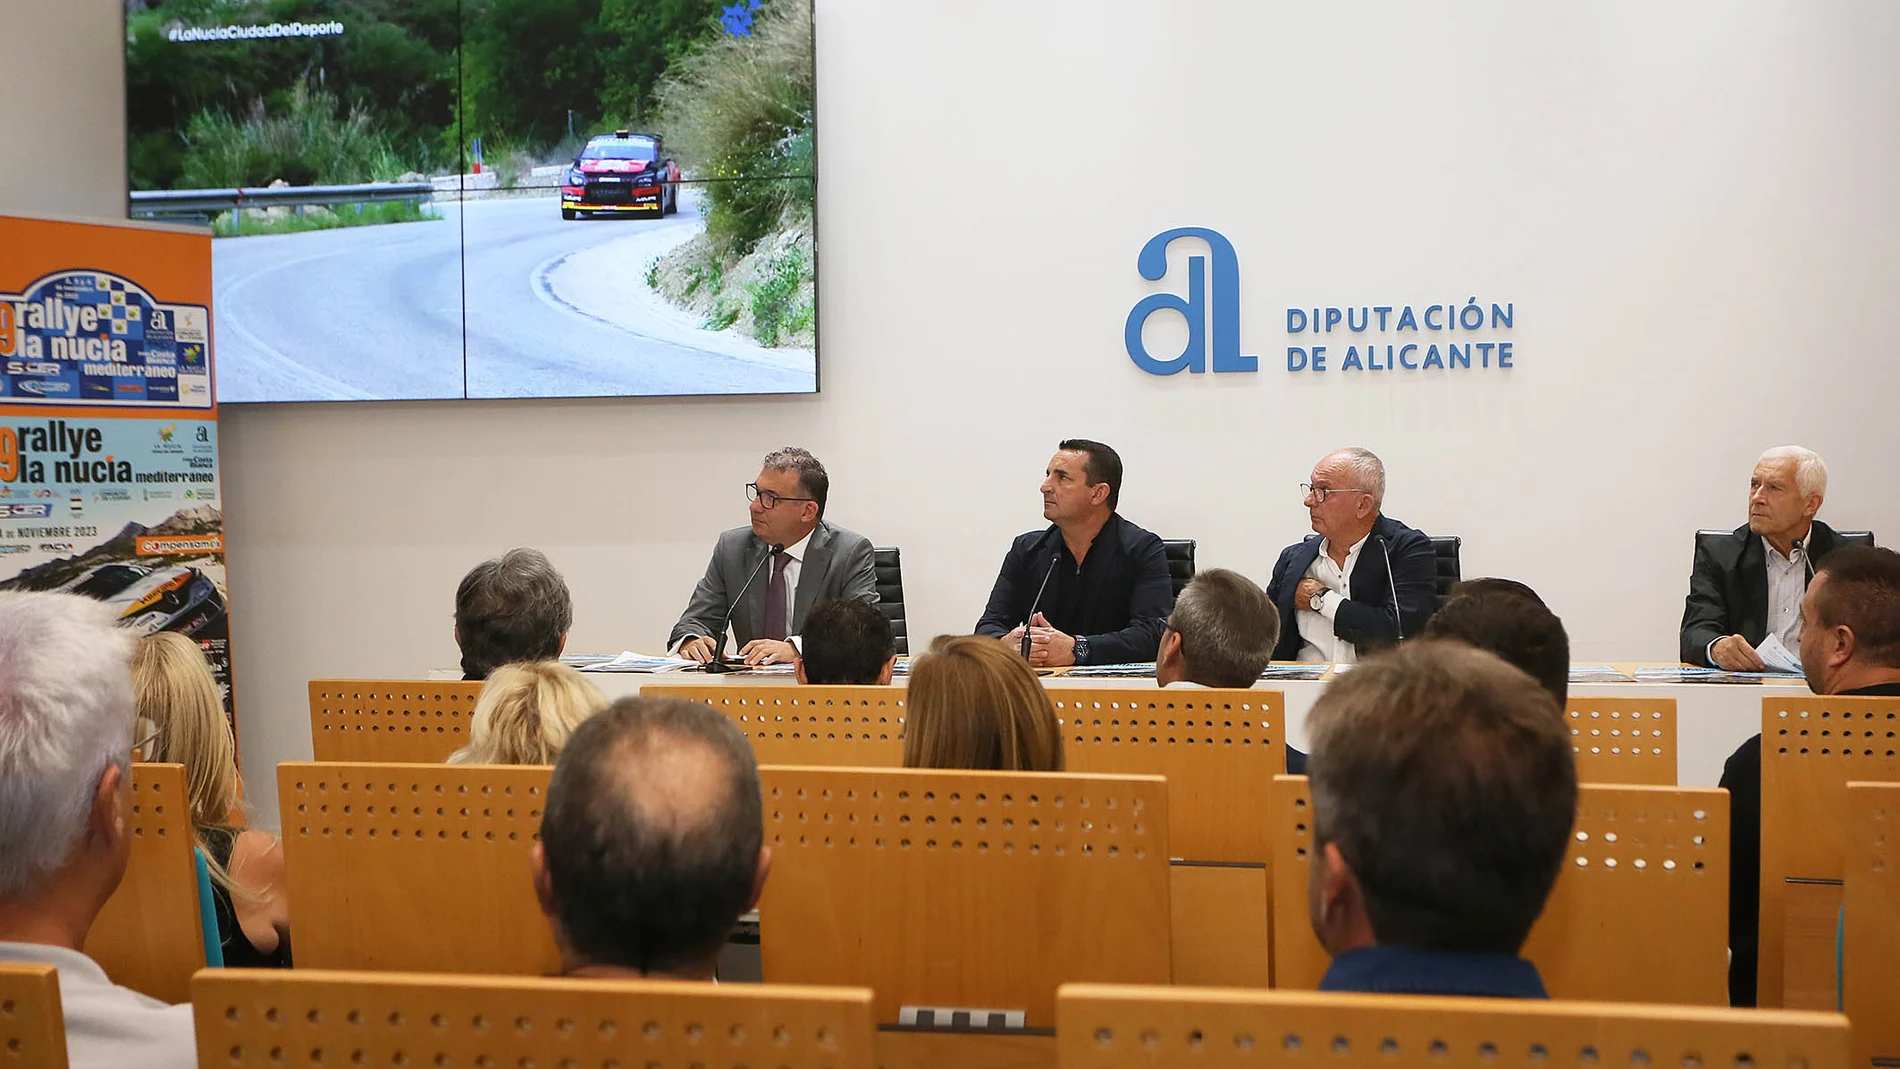 Presentación hoy en Alicante del 29 Rallye La Nucía Trofeo Mediterráneo.